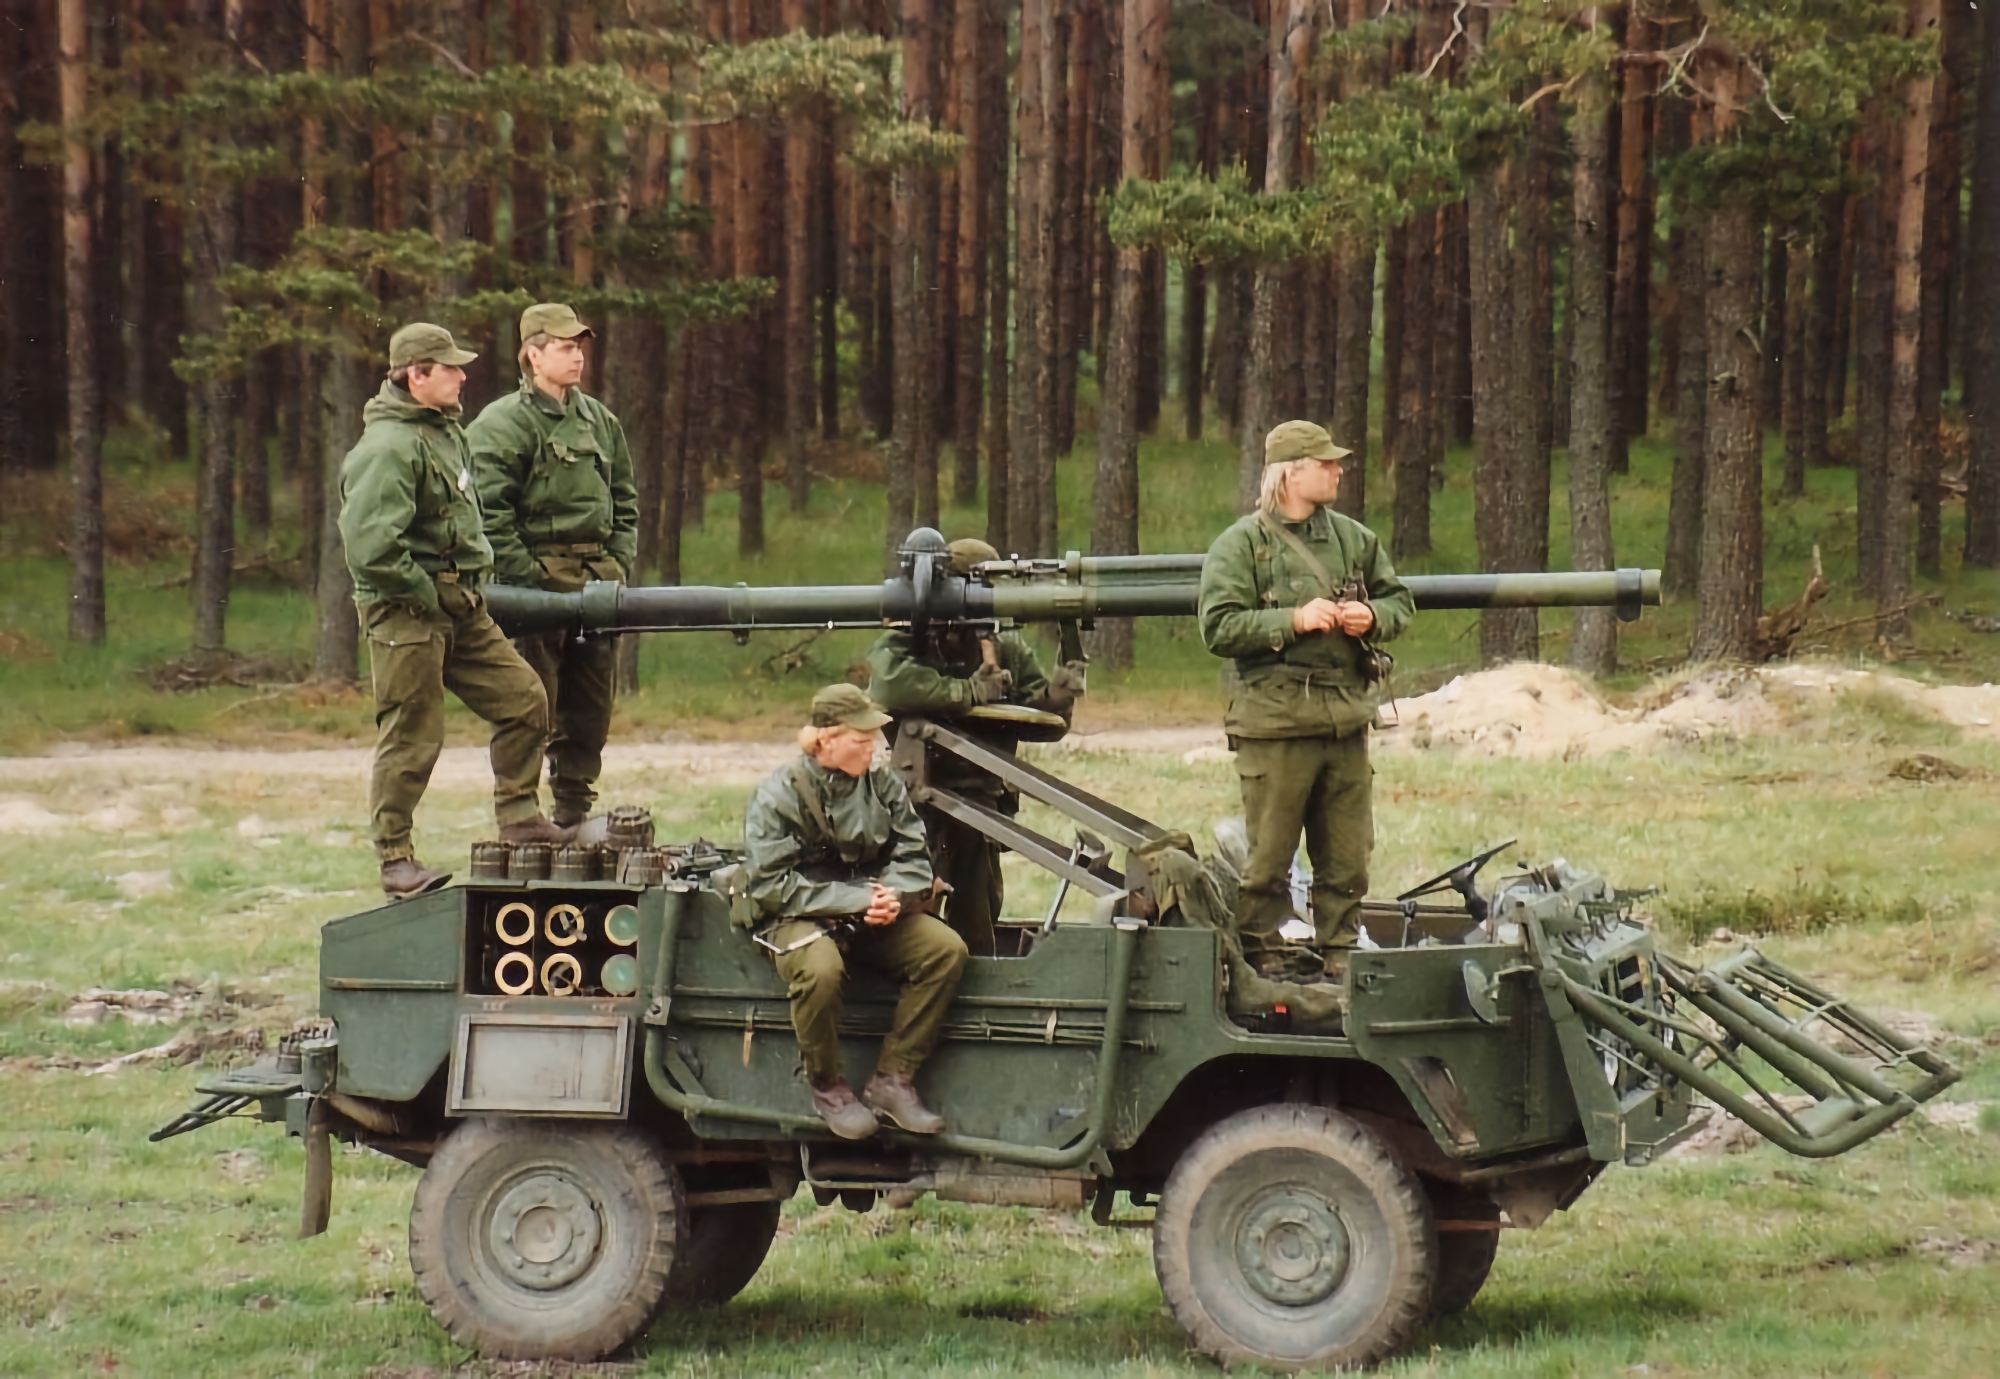 Le forze armate ucraine hanno iniziato a utilizzare i cannoni anticarro svedesi Pansarvärnspjäs 1110, che possono colpire bersagli a una distanza massima di 1 km